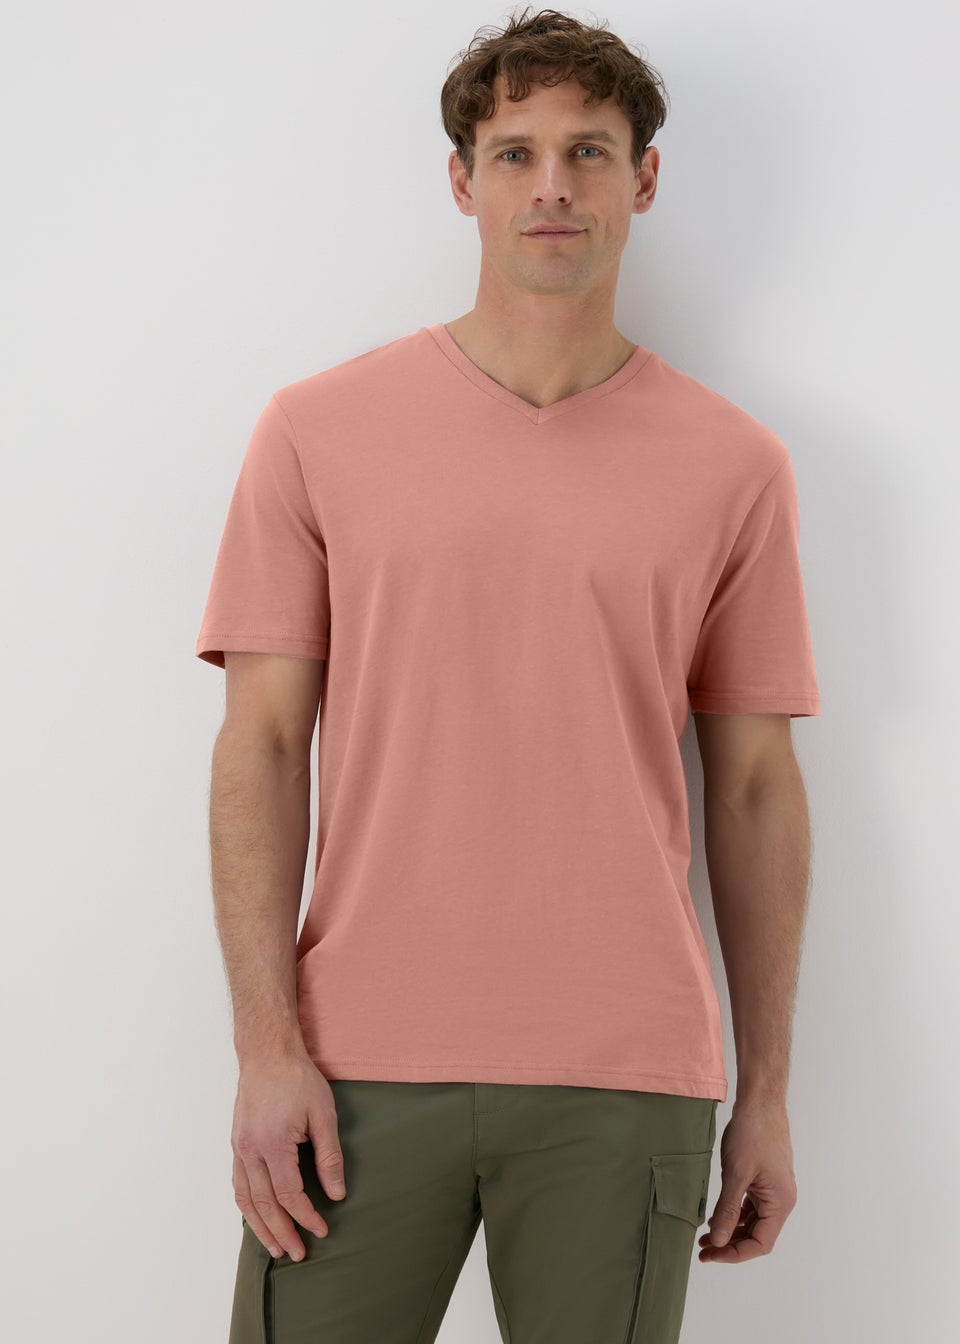 Pink Burlwood Essential V Neck T-Shirt